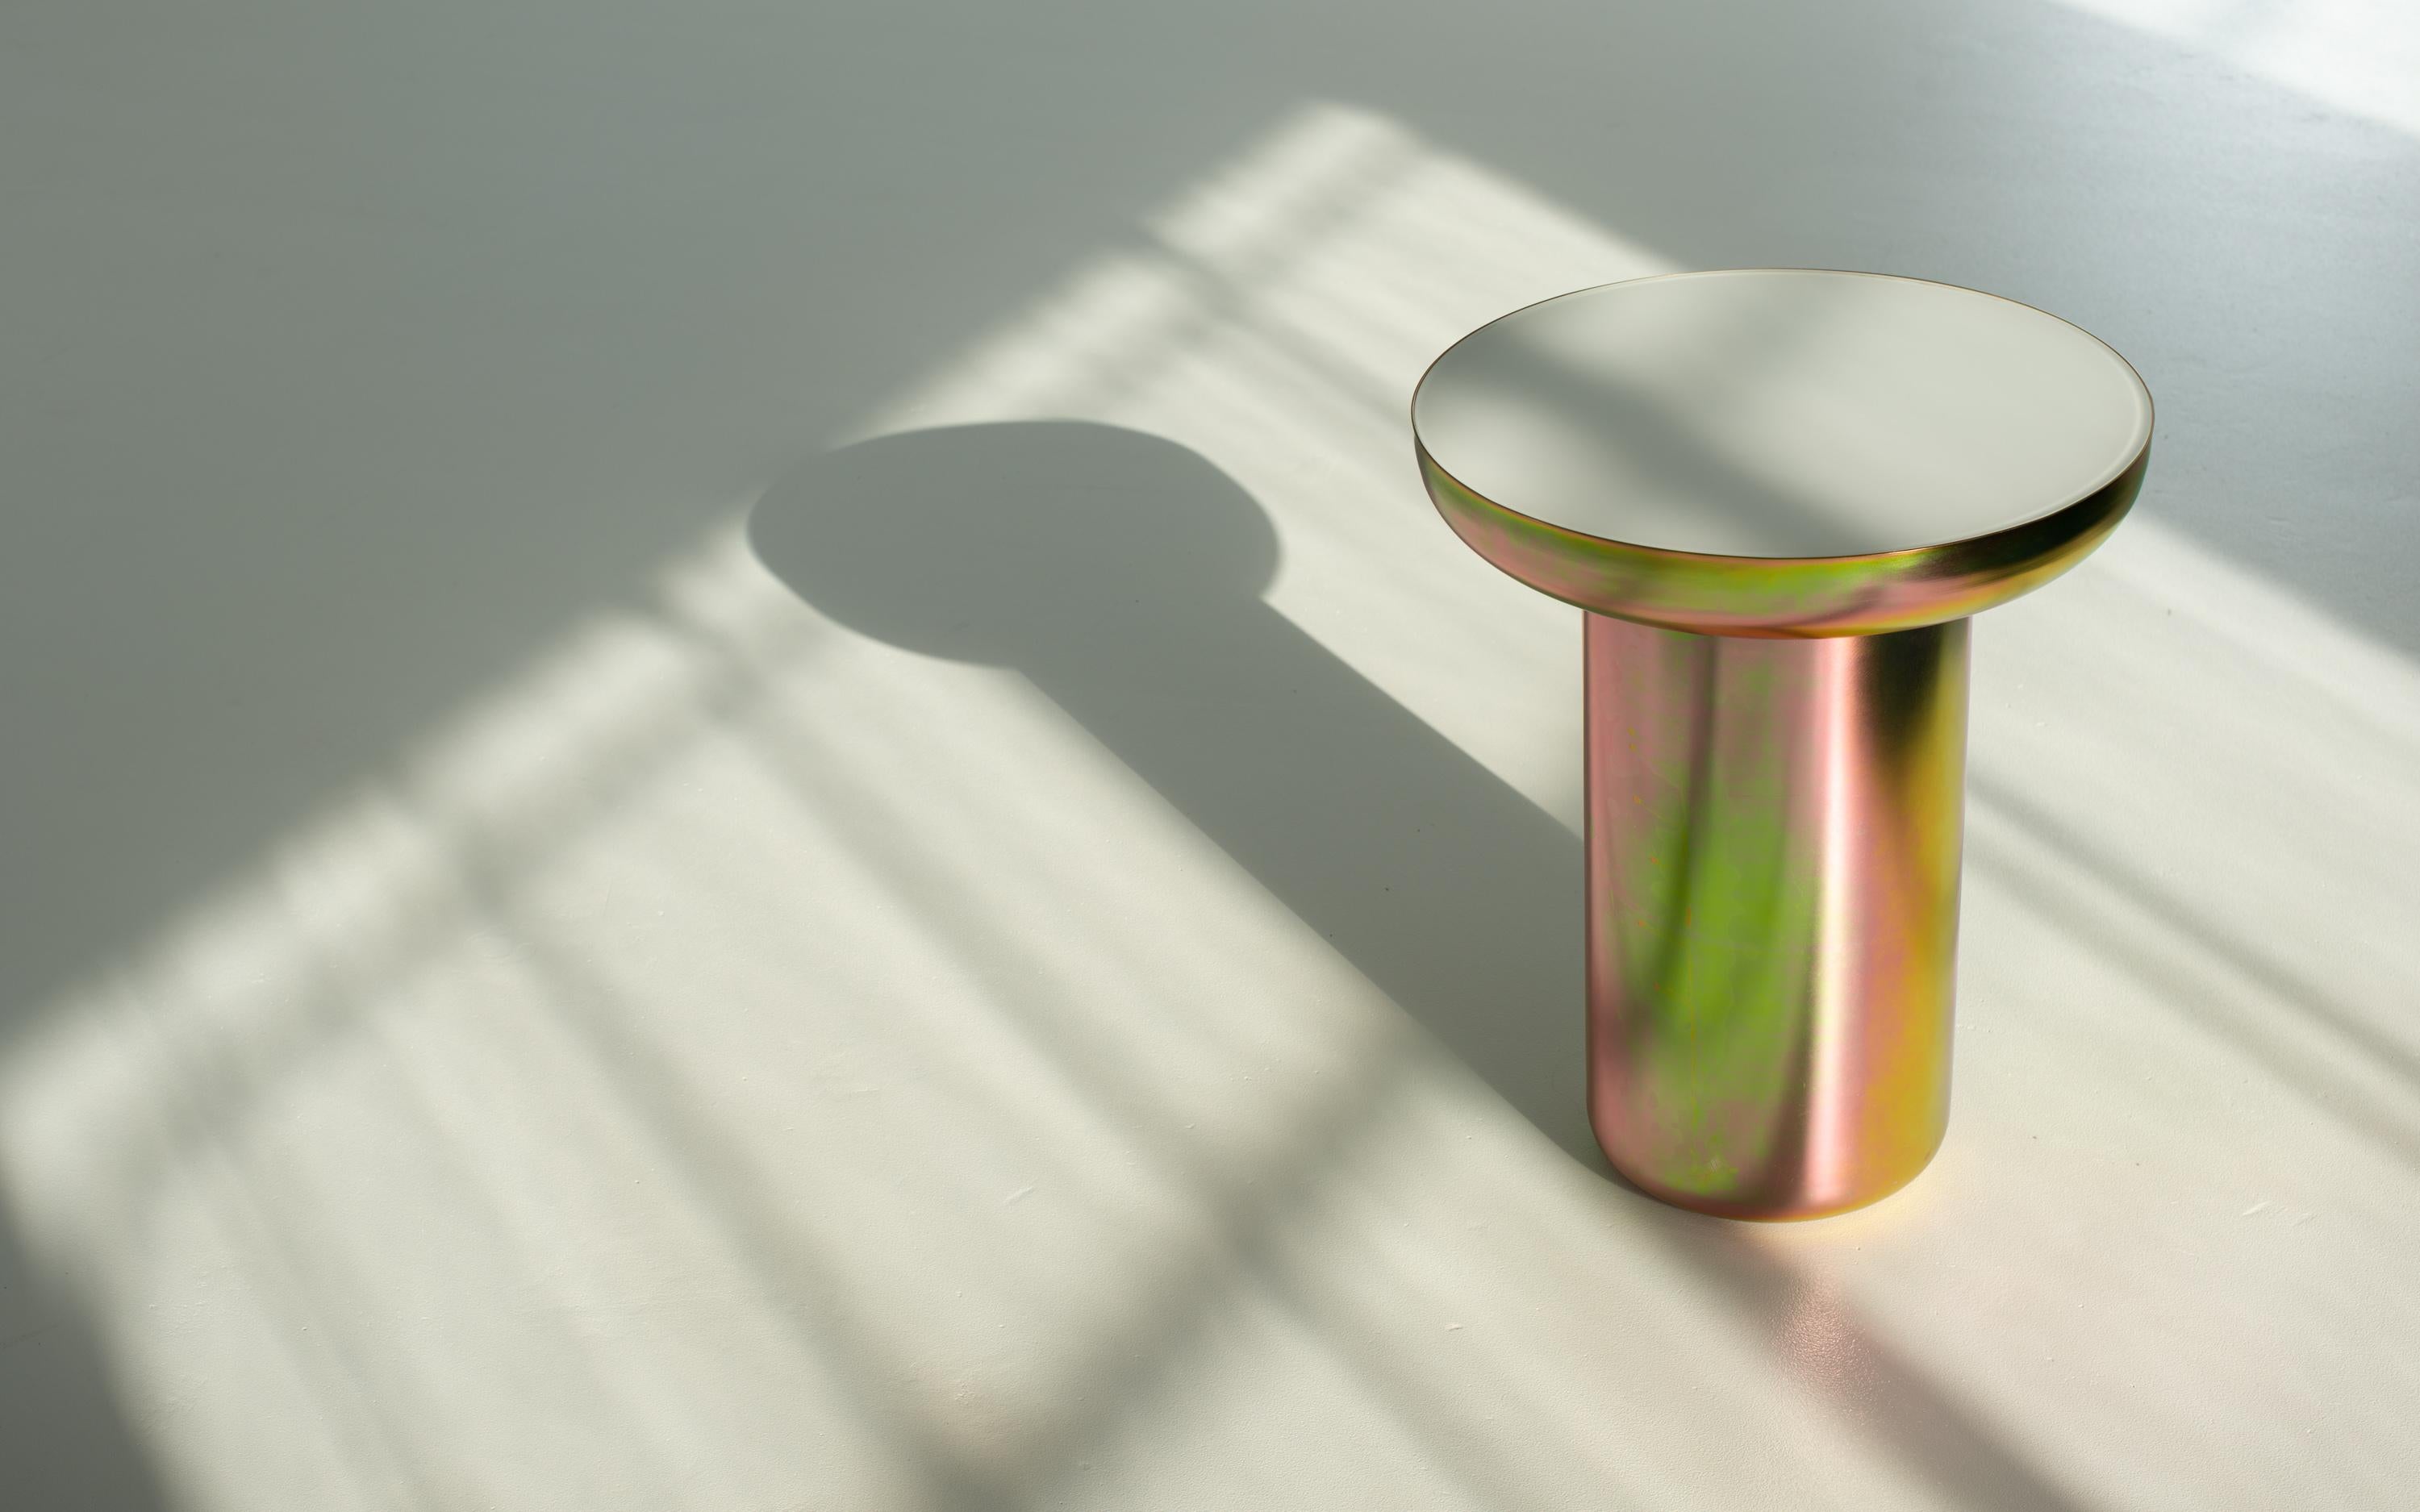 Mood side zinc ist ein visuell leichter, skulptural starker Tisch, der mit einem Finish beschichtet ist, das die Form hervorhebt und die Farbe feiert. Der Sockel ist mit einer Zinkbeschichtung versehen, die es dem Stück ermöglicht, die Farben und